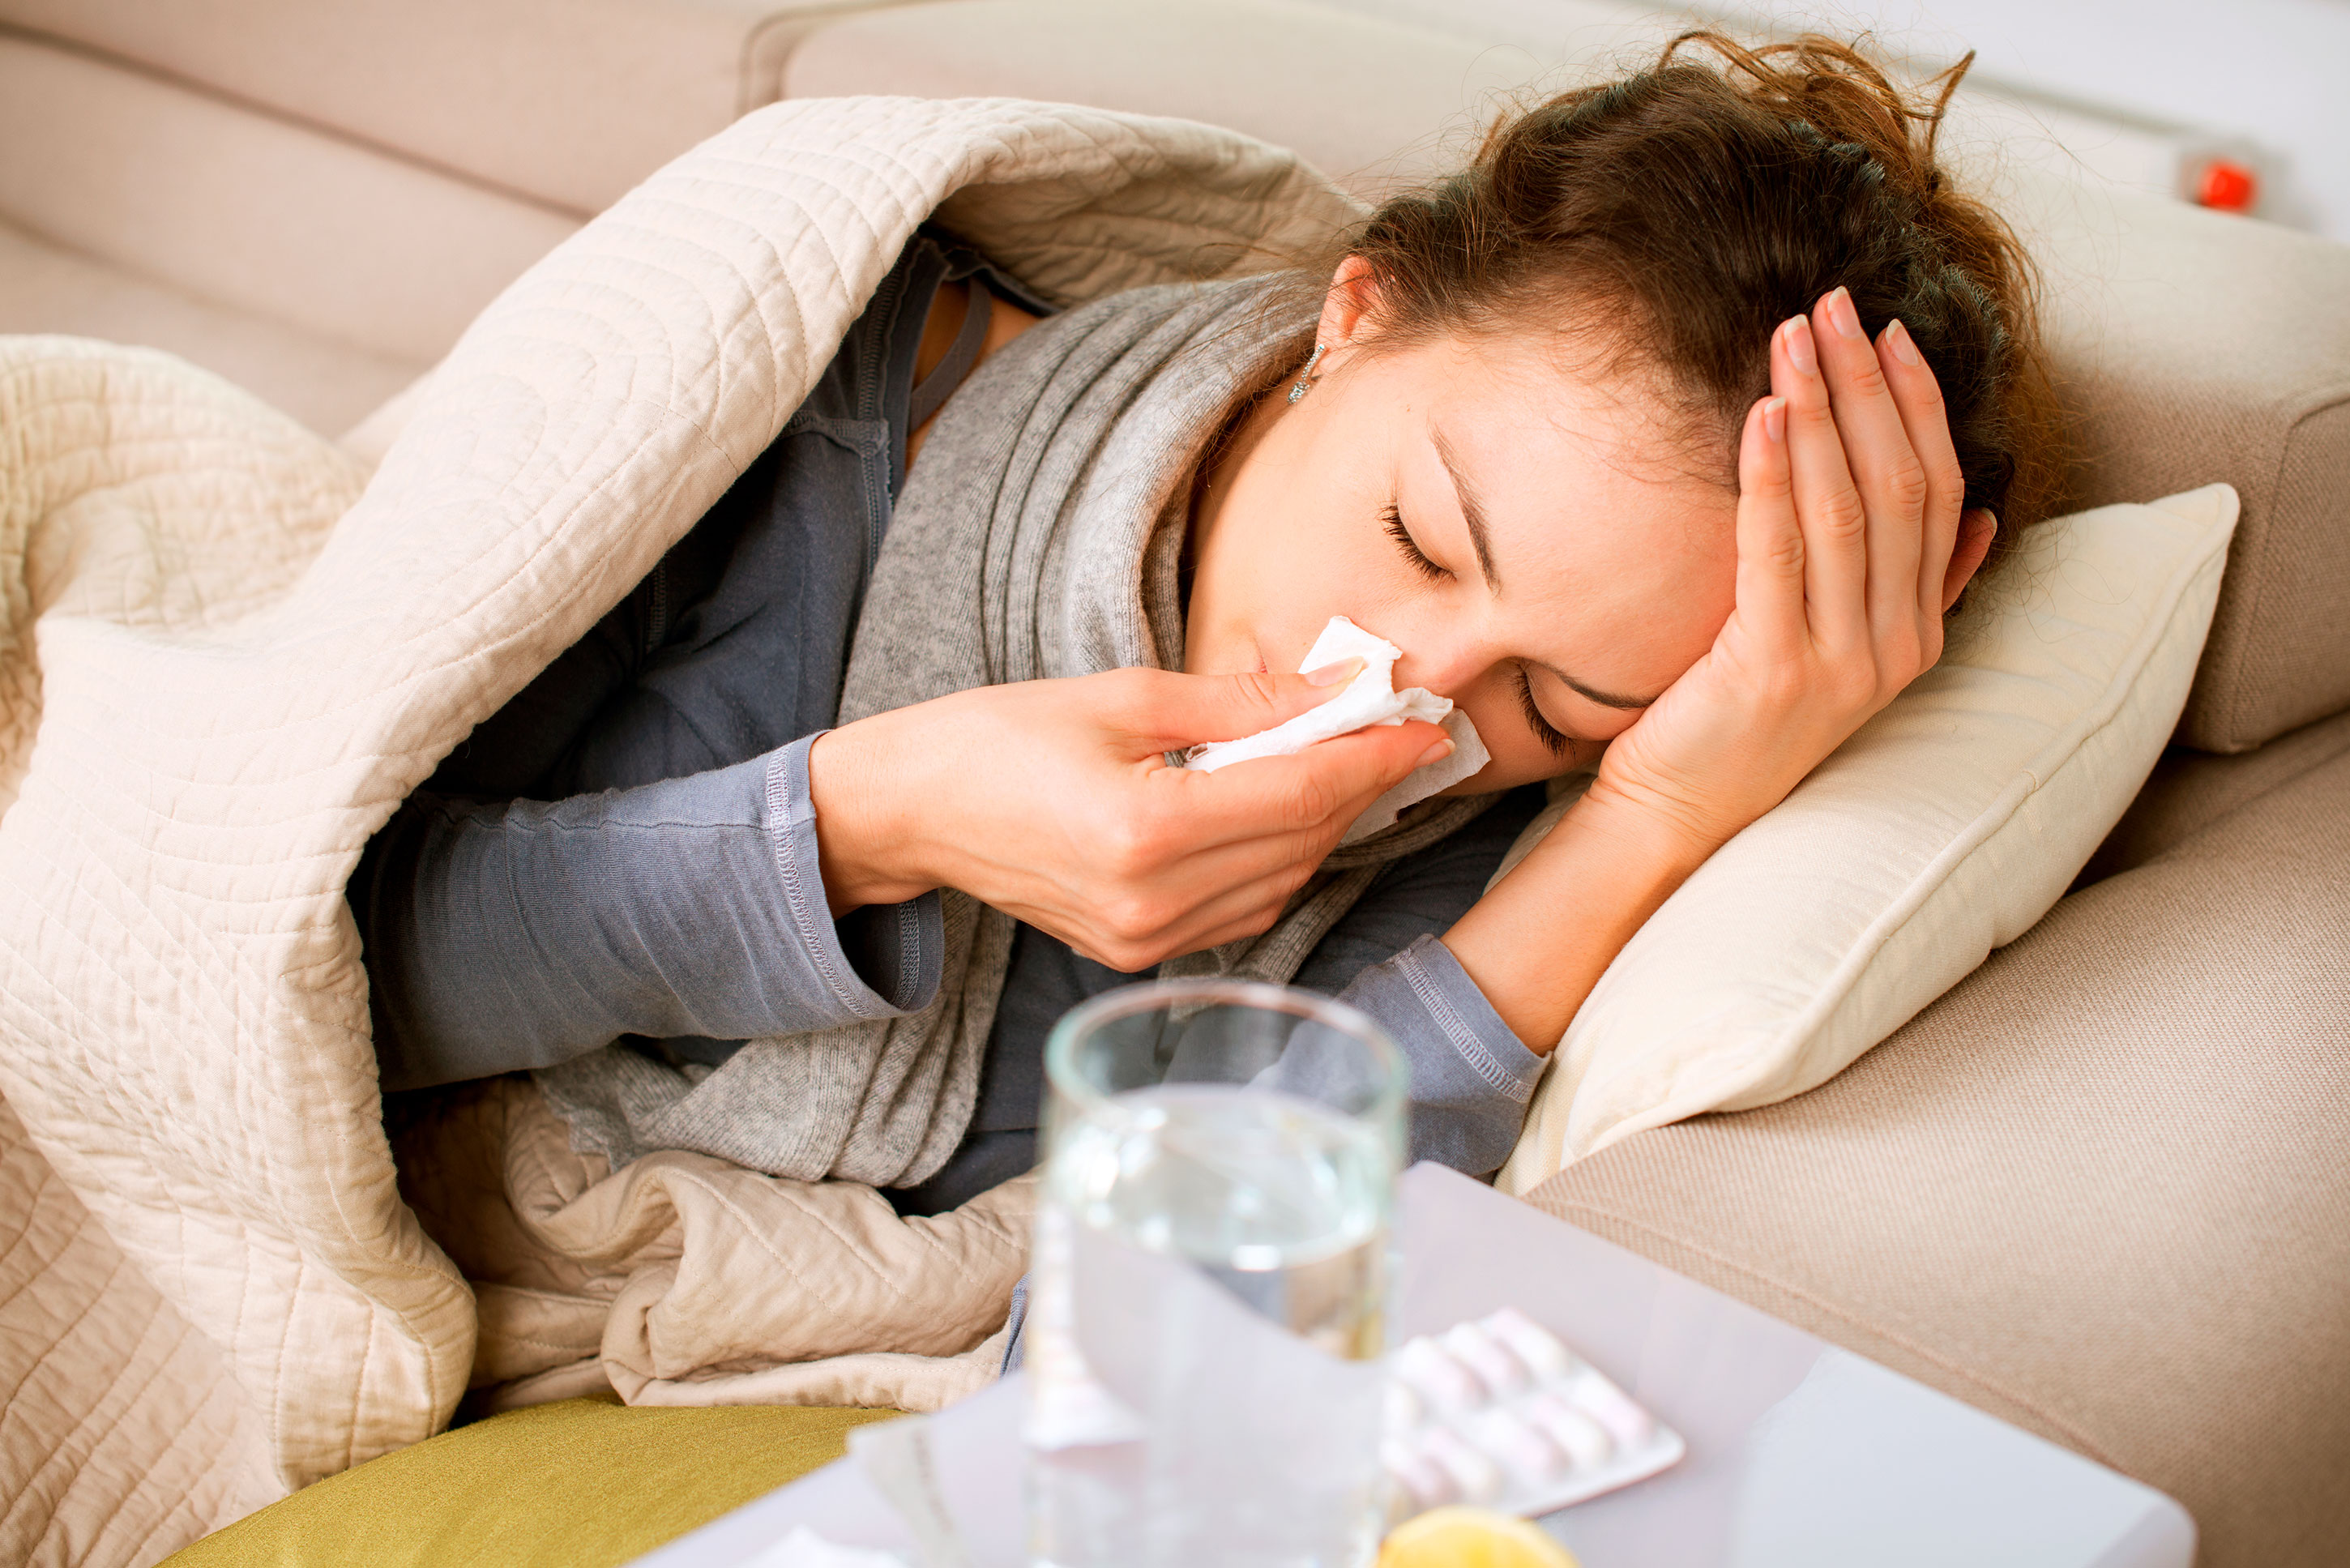 Al día de hoy los síntomas más habituales del COVID-19 son fiebre, tos seca y cansancio (Shutterstock)